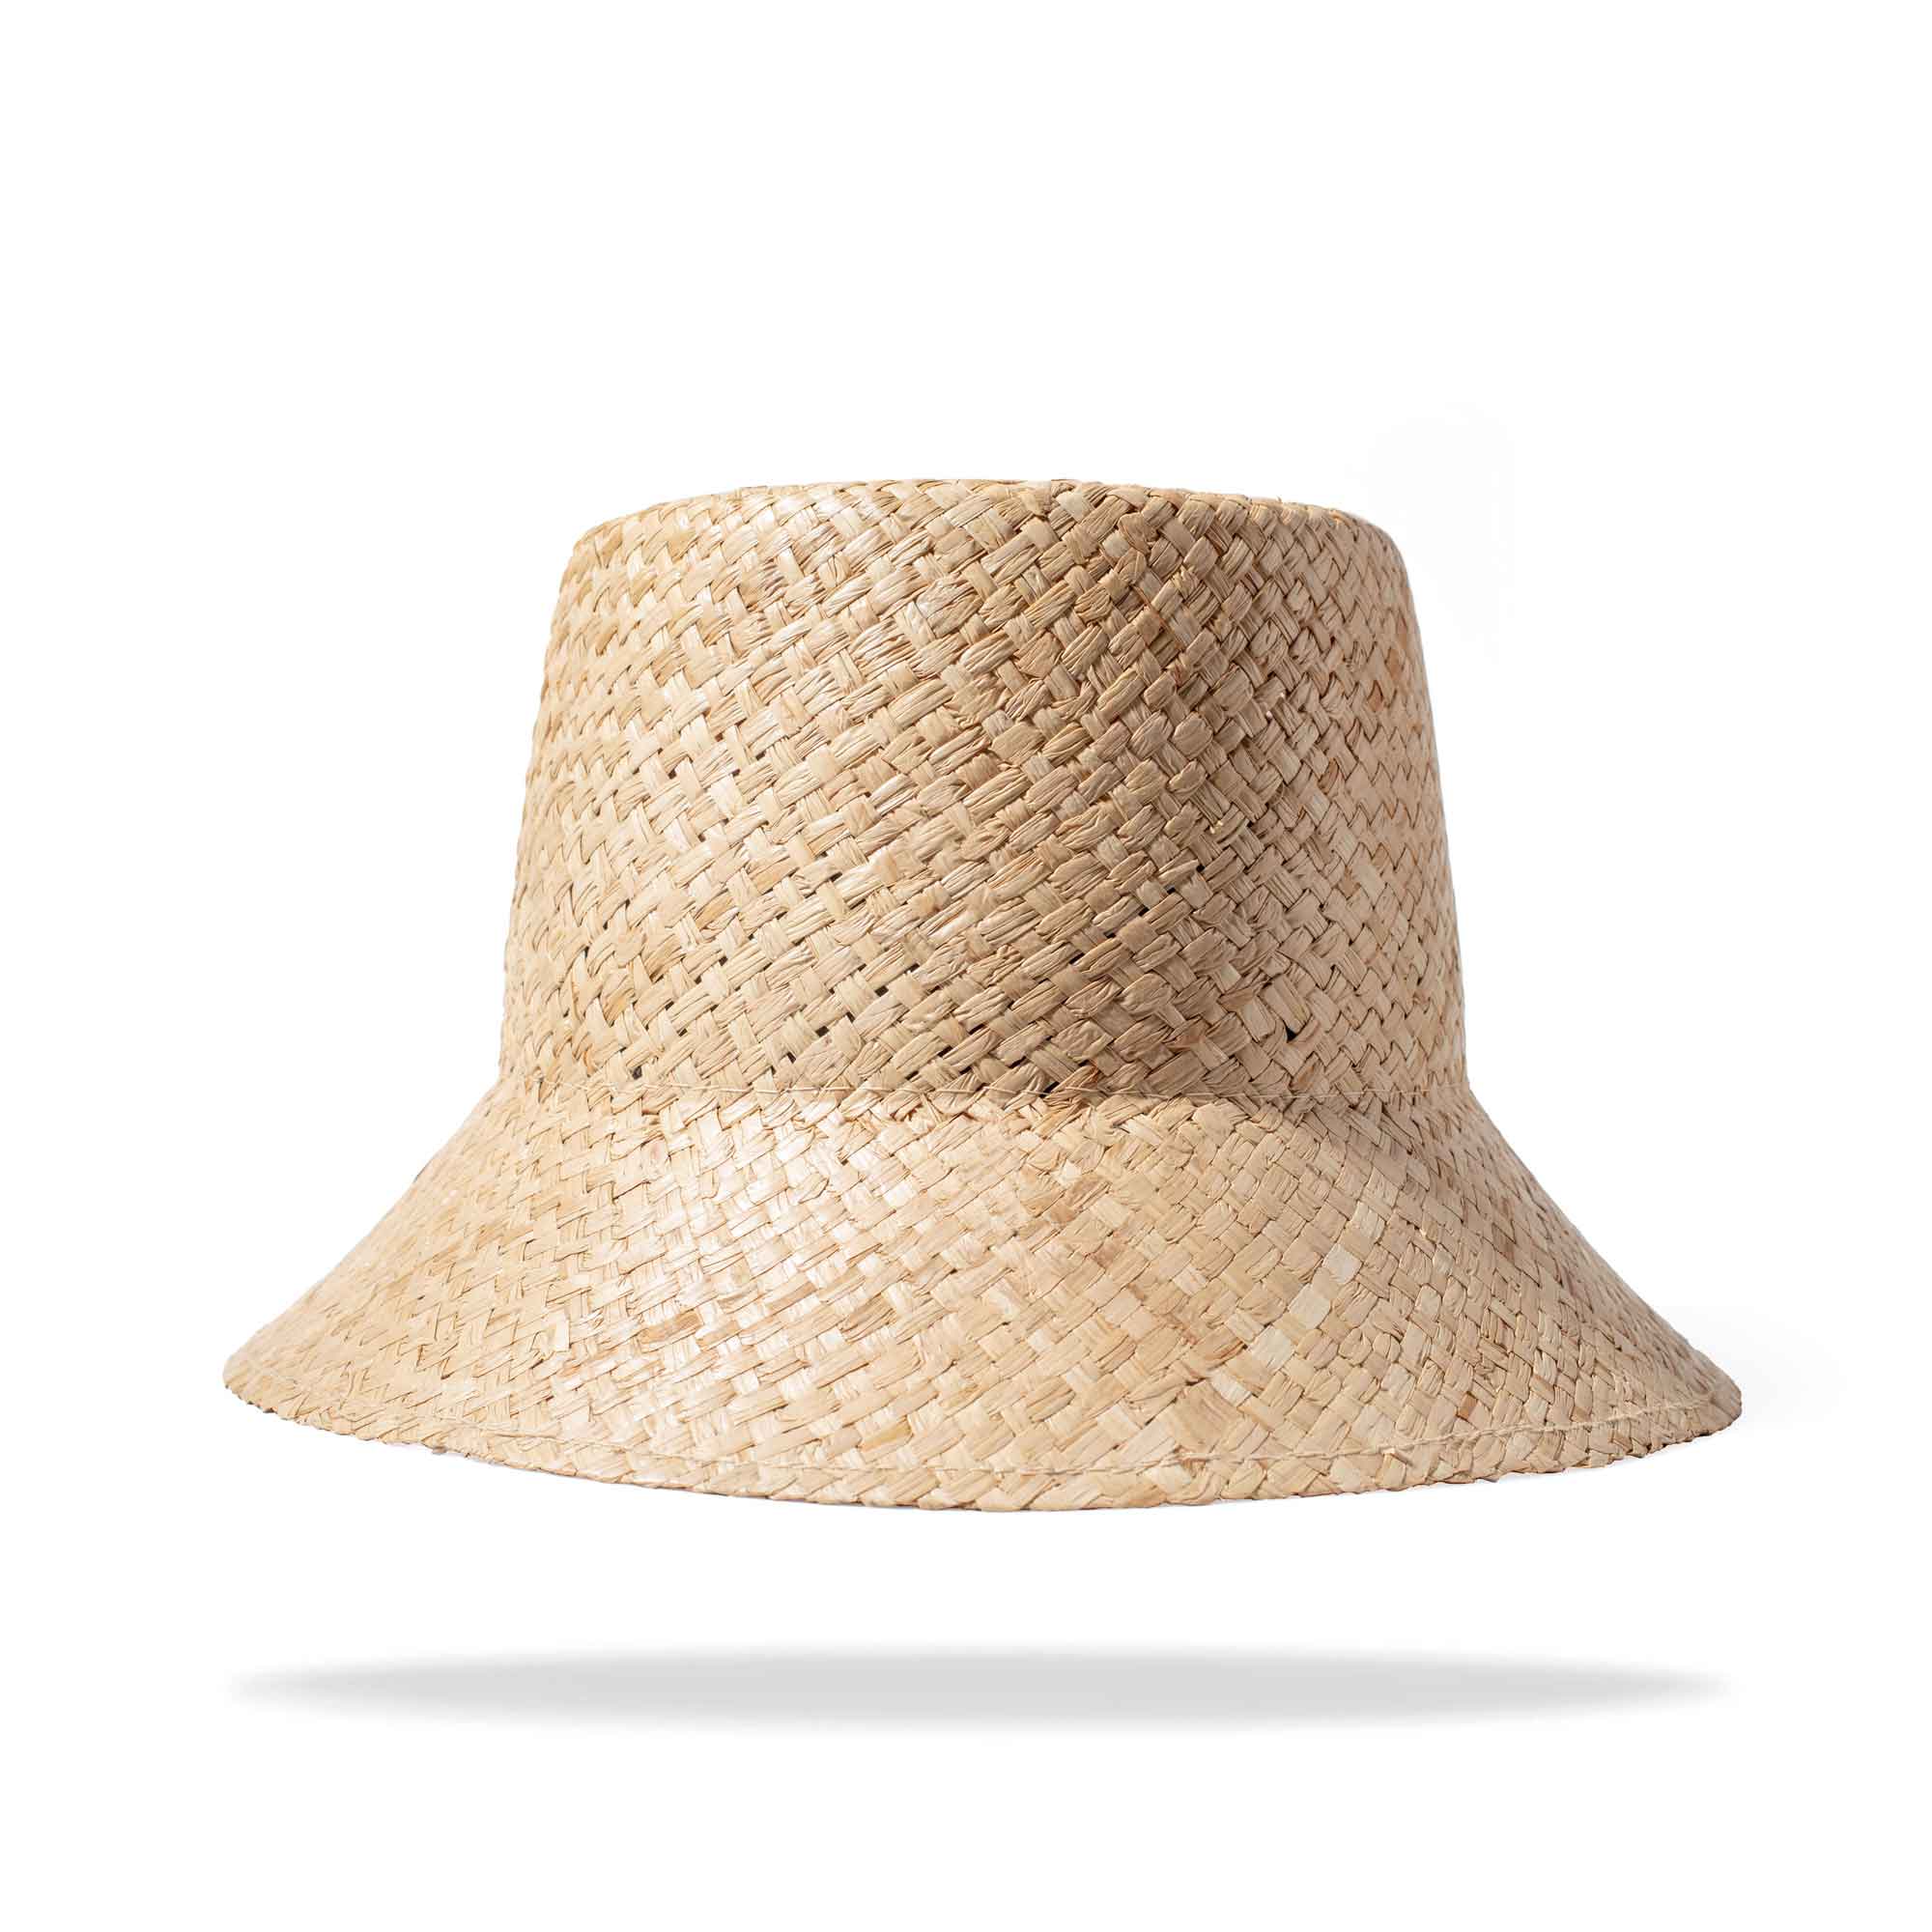 Gorra Morocco Cap – P'OOK Hats Worldwide